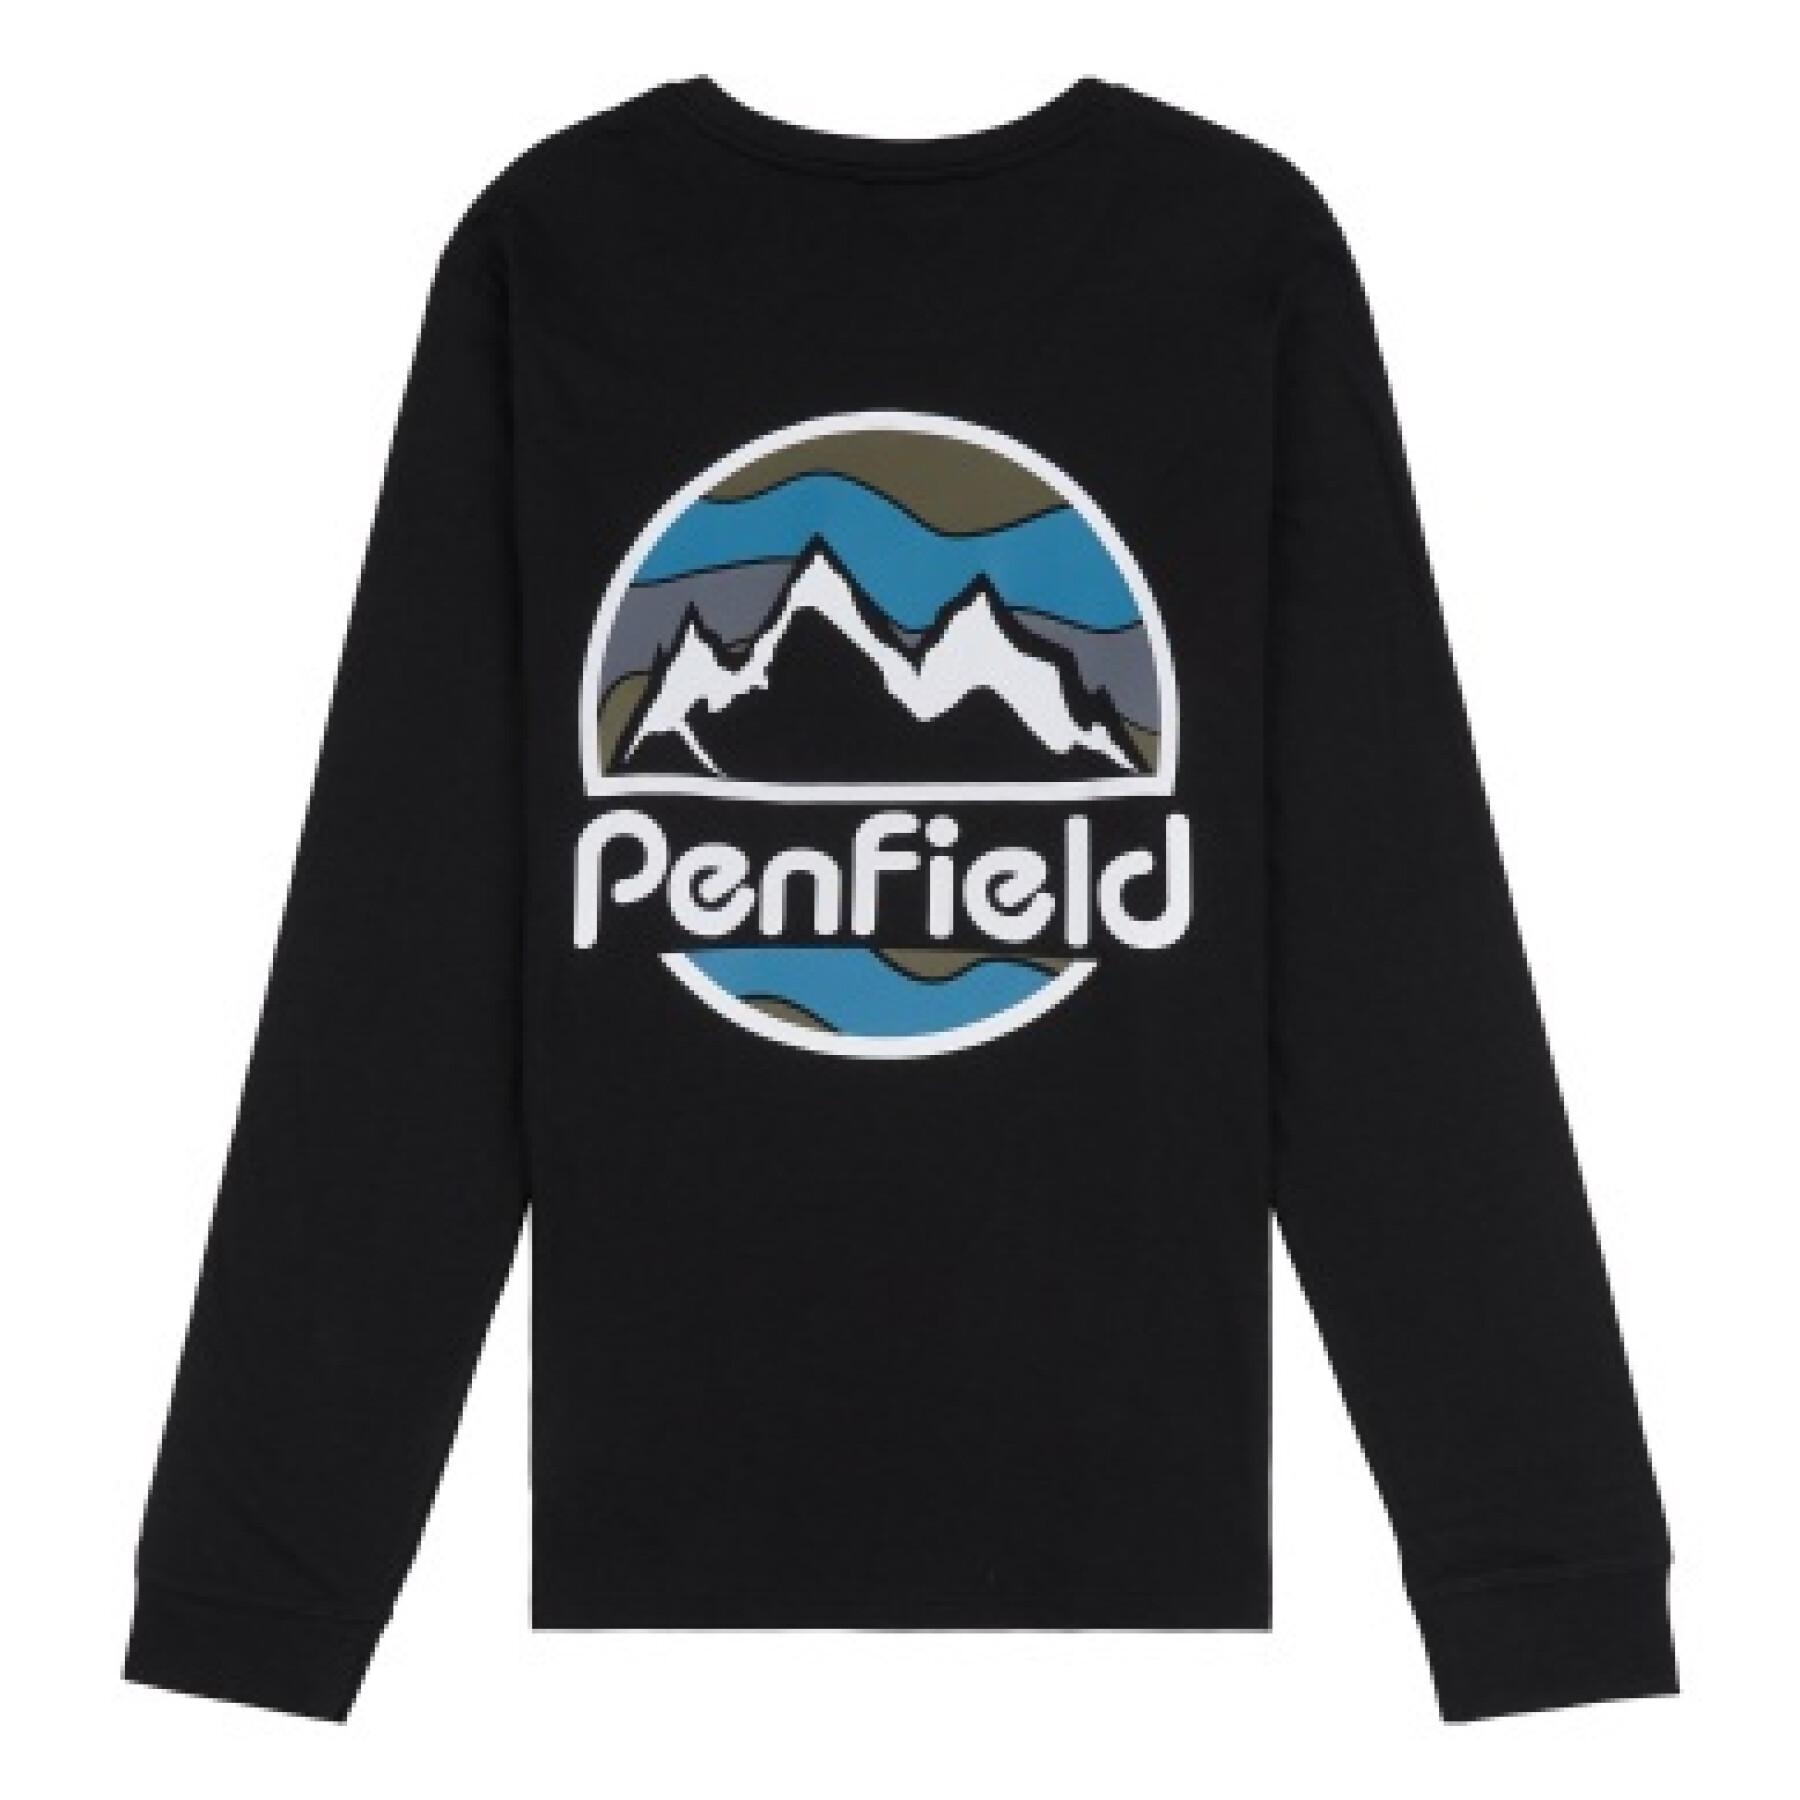 Camiseta mangas largas Penfield back circular